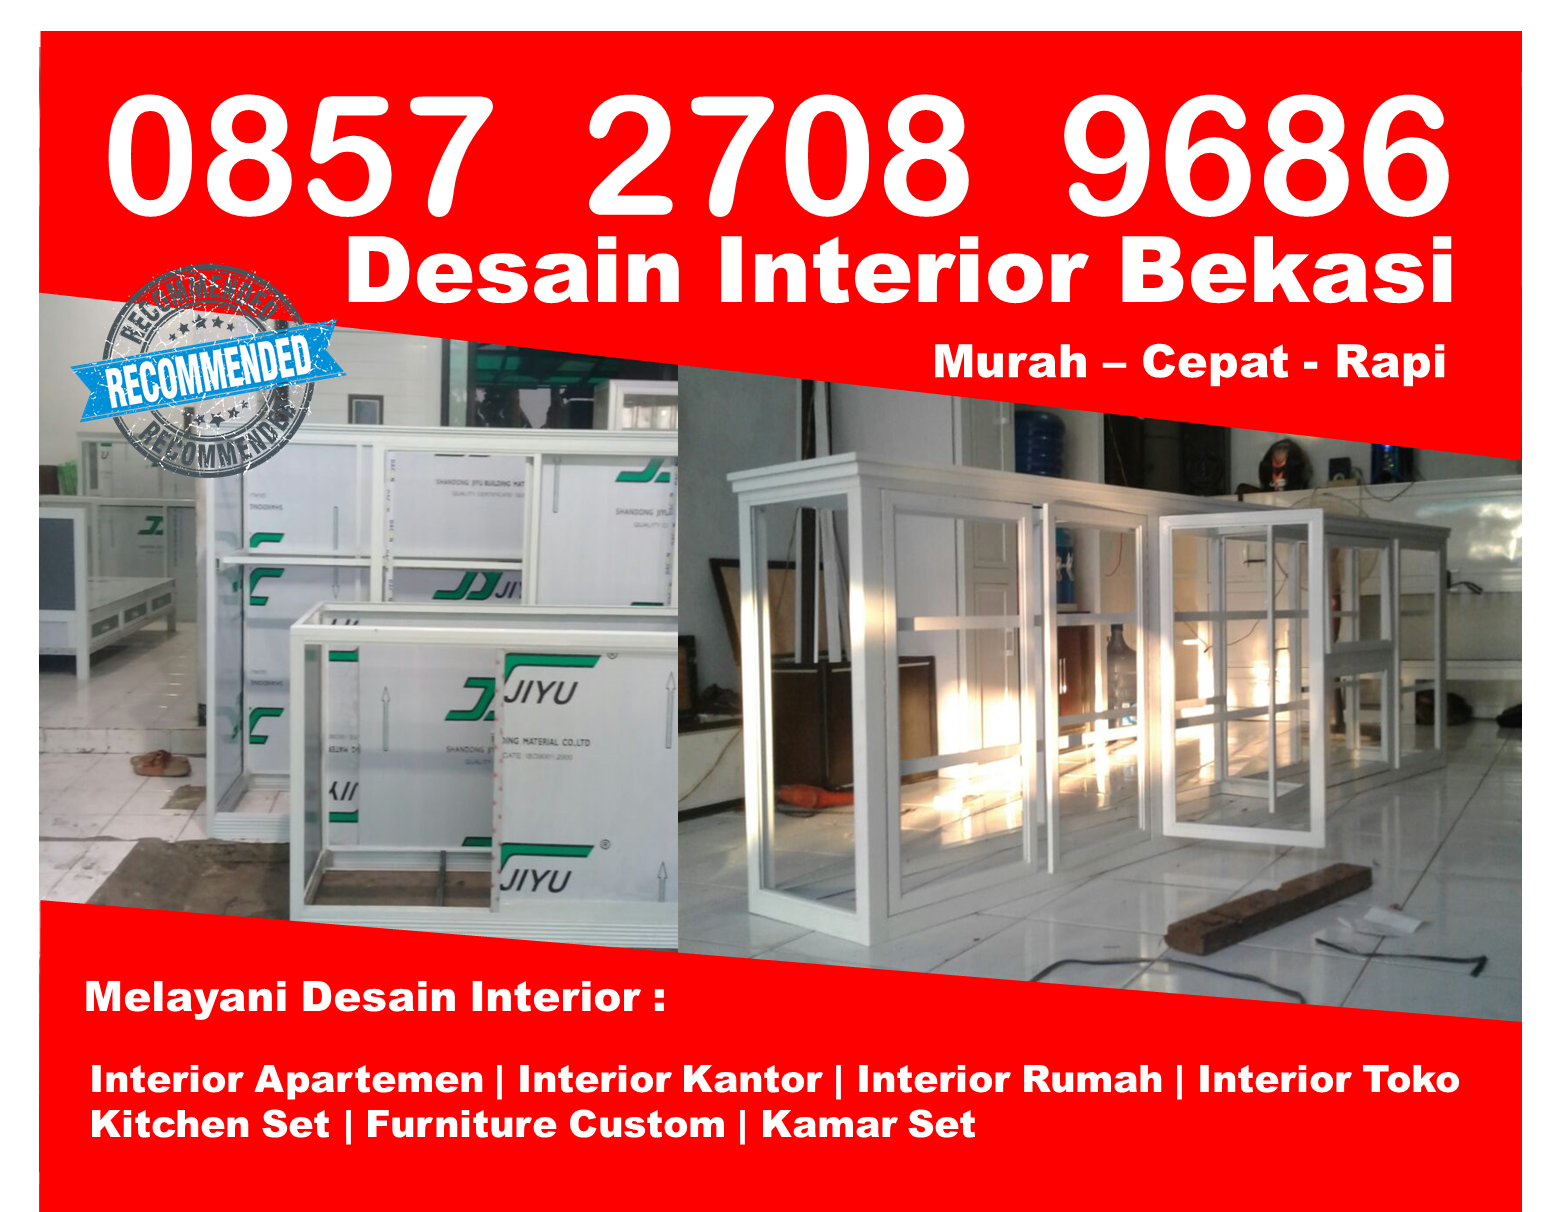 Telp 0857 2708 9686 Indosat Design Interior Apartemen Mungil